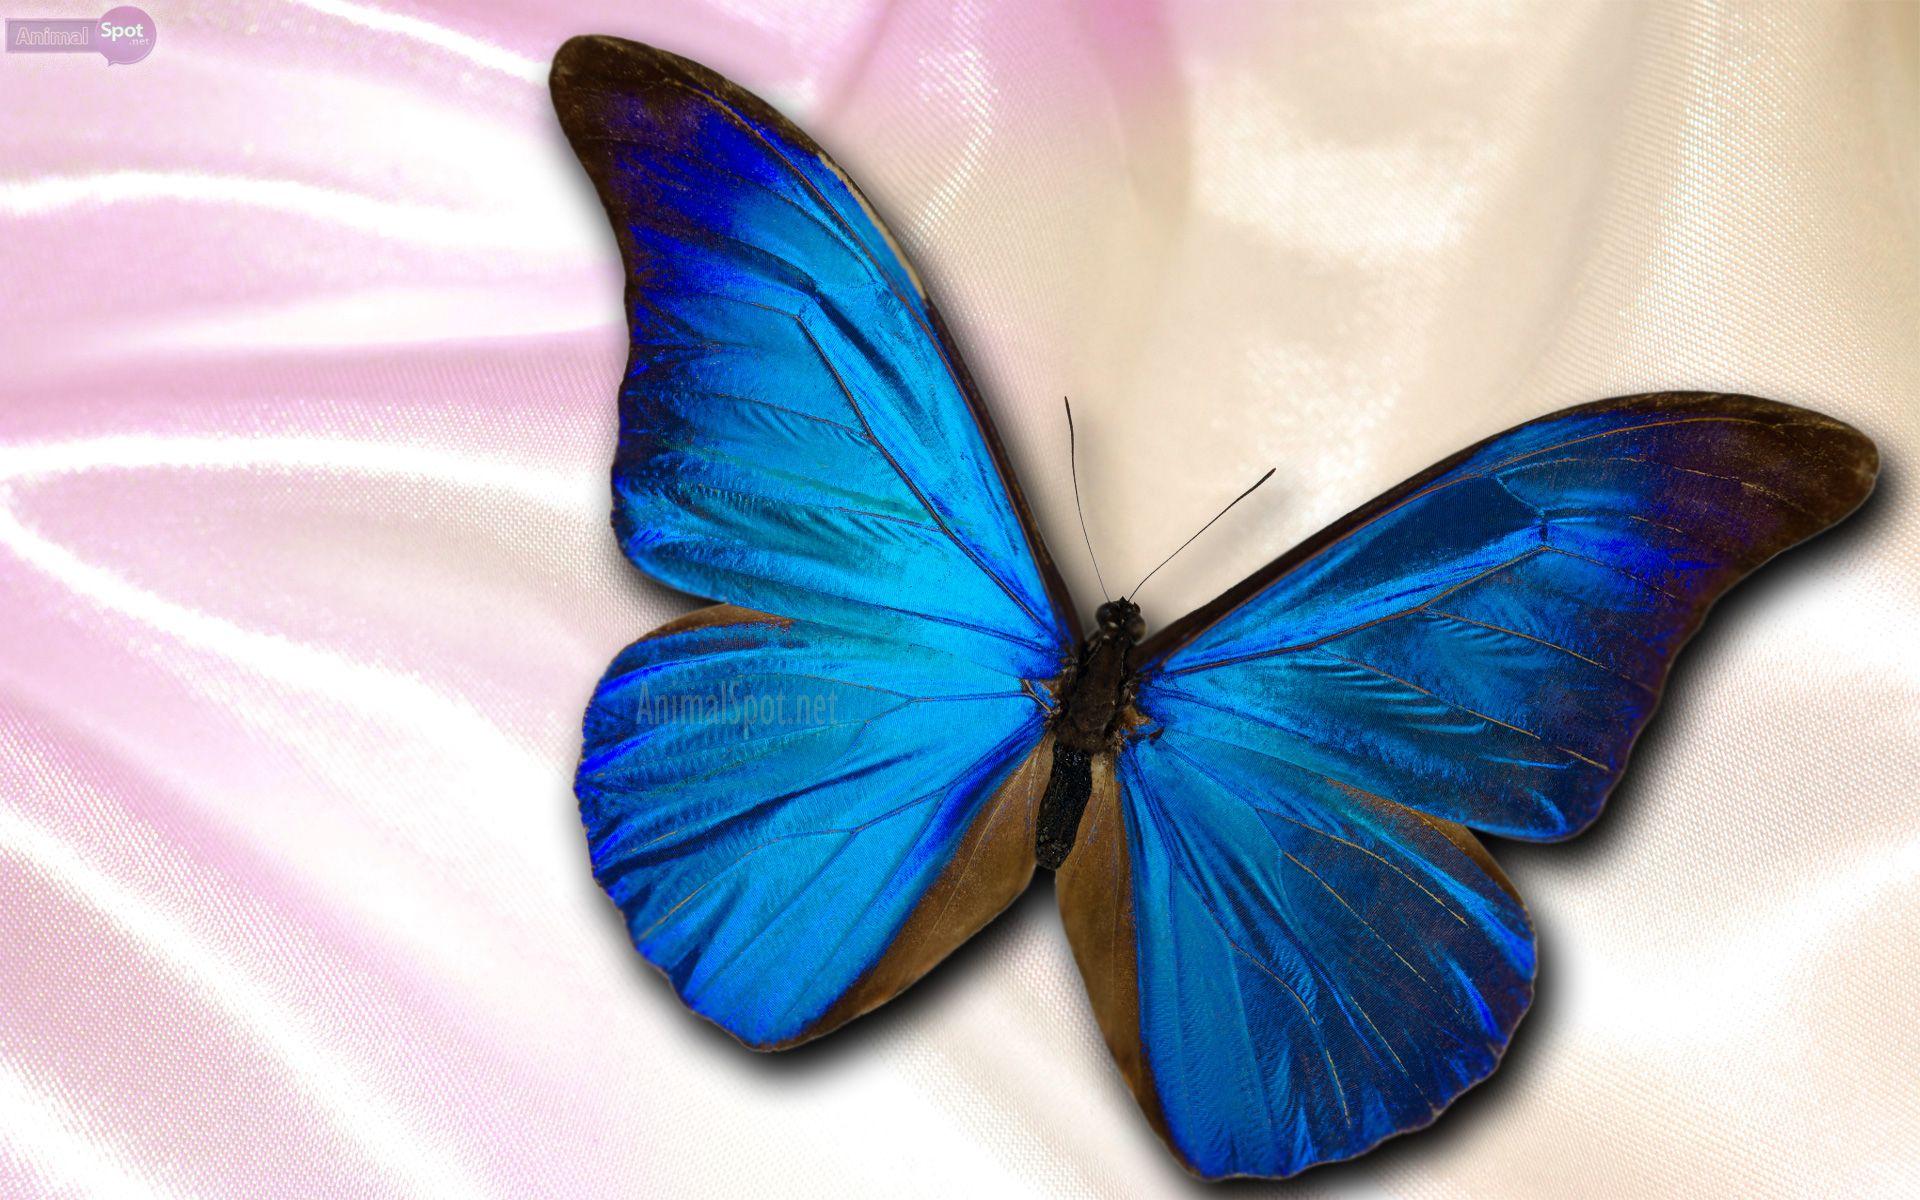 Blue Butterfly Desktop Wallpapers - Top Free Blue ...